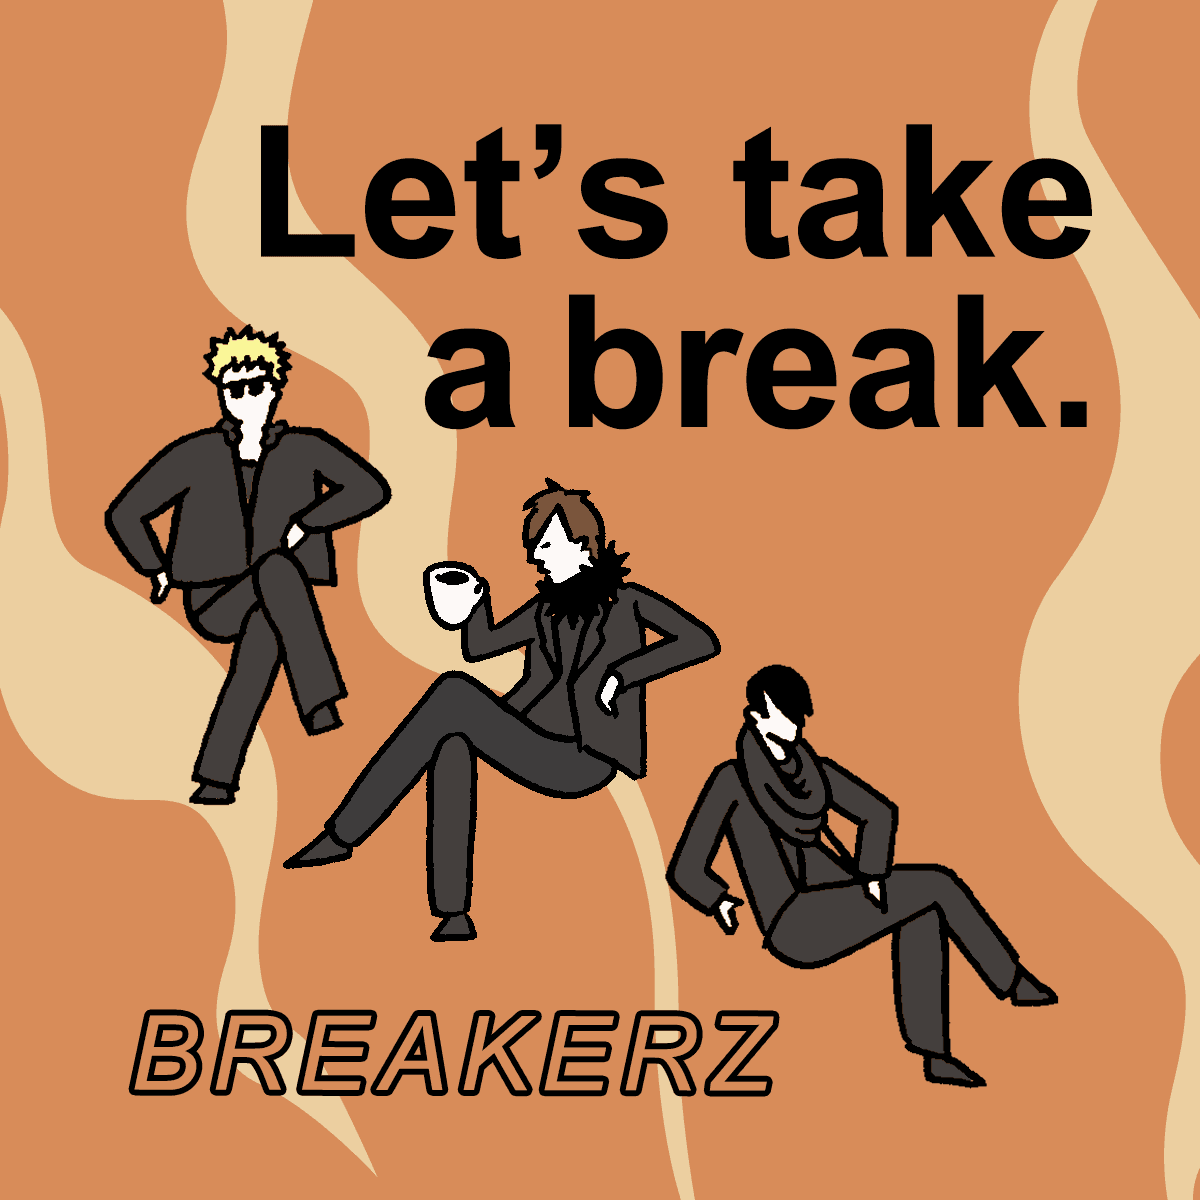 ｢BREAKERZ｣から学ぶ<br>Let’s take a break.